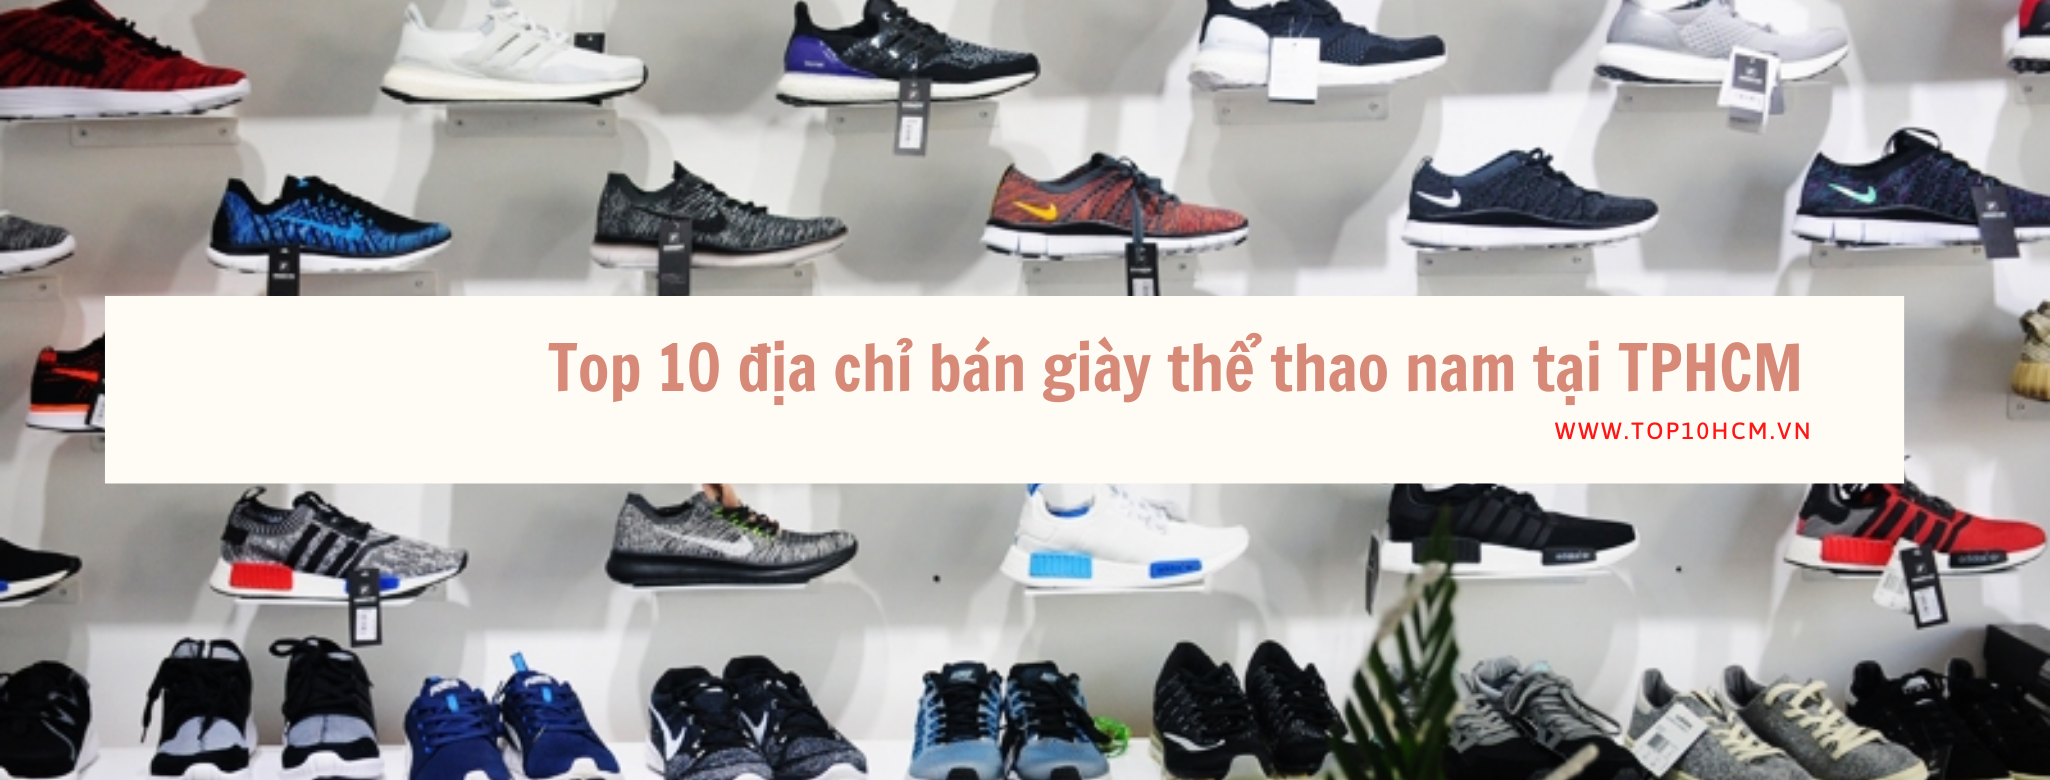 Top 10 địa chỉ bán giày thể thao nam tại TPHCM